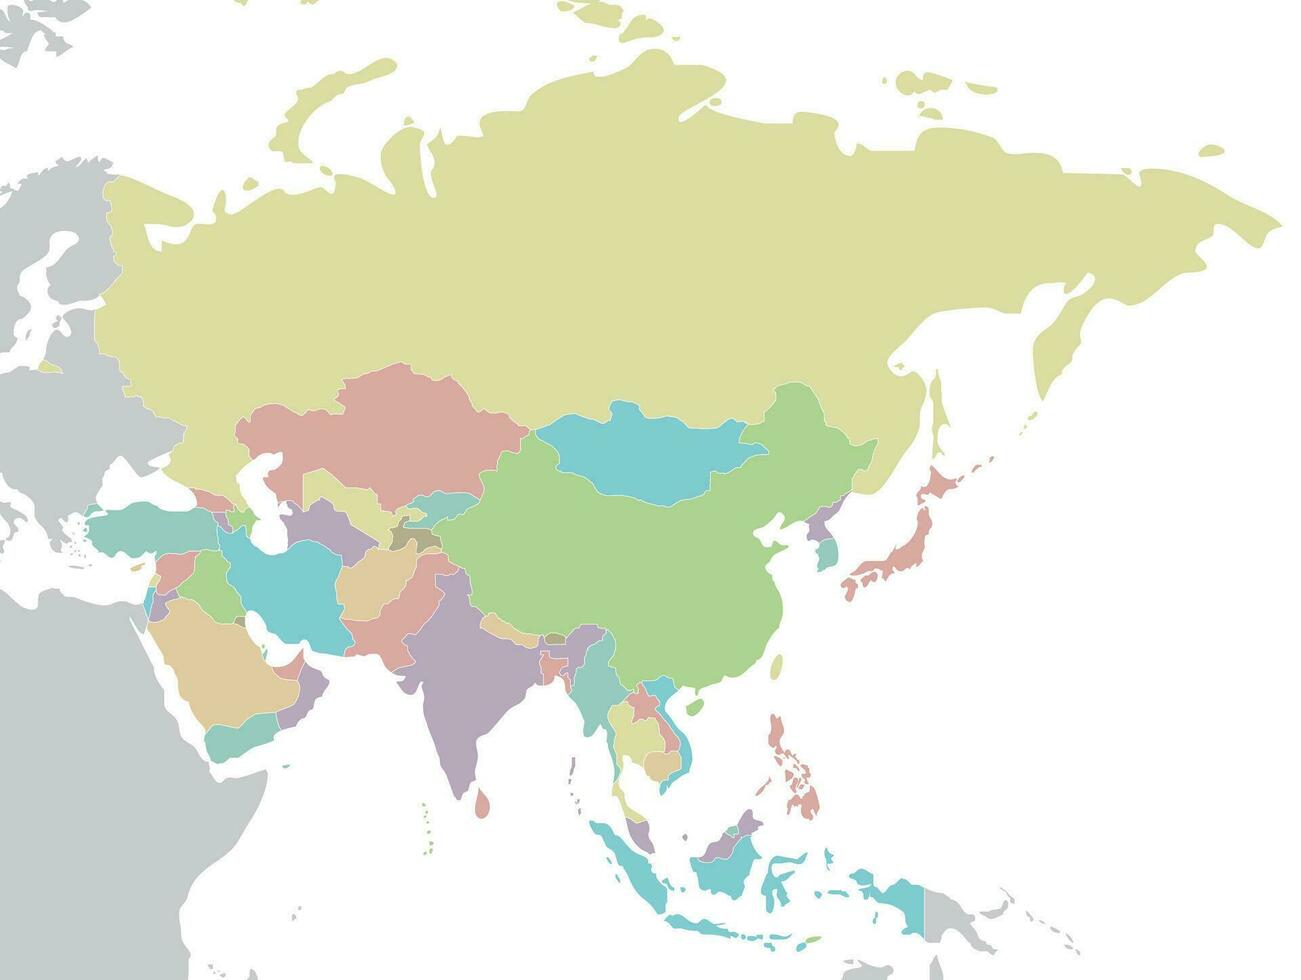 politisch leer Asien Karte Vektor Illustration isoliert auf Weiß Hintergrund. editierbar und deutlich beschriftet Lagen.